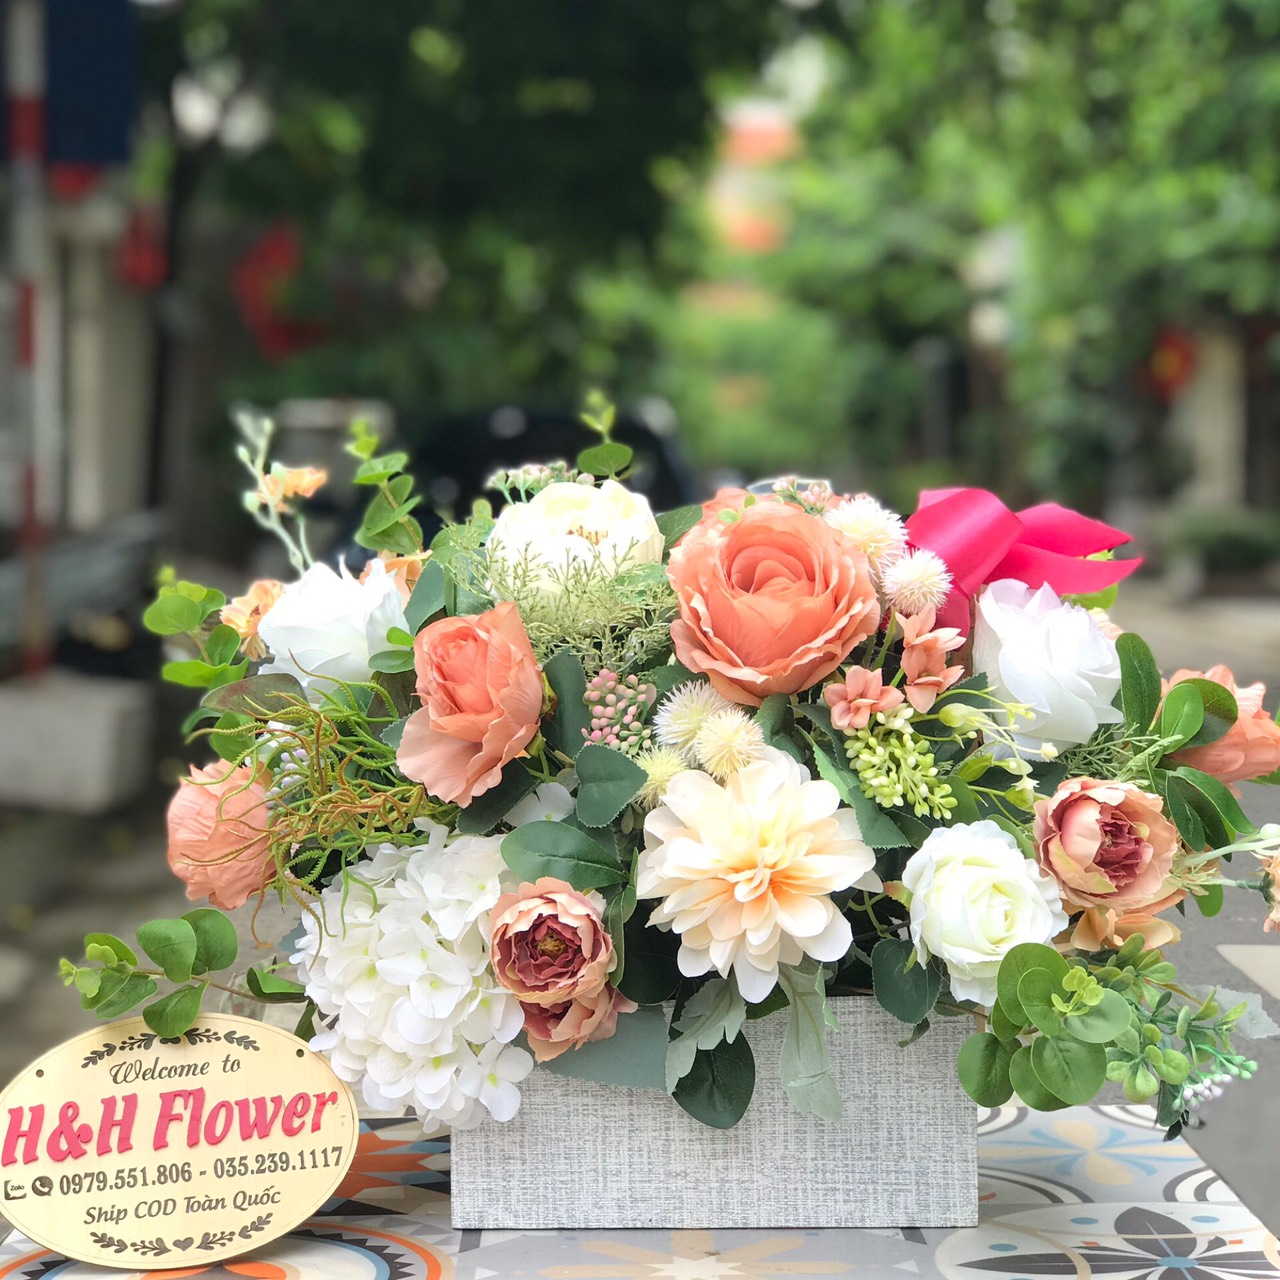 Giỏ hoa lụa đẹp tặng những dịp đặc biệt trong năm - Hoa Lụa HH